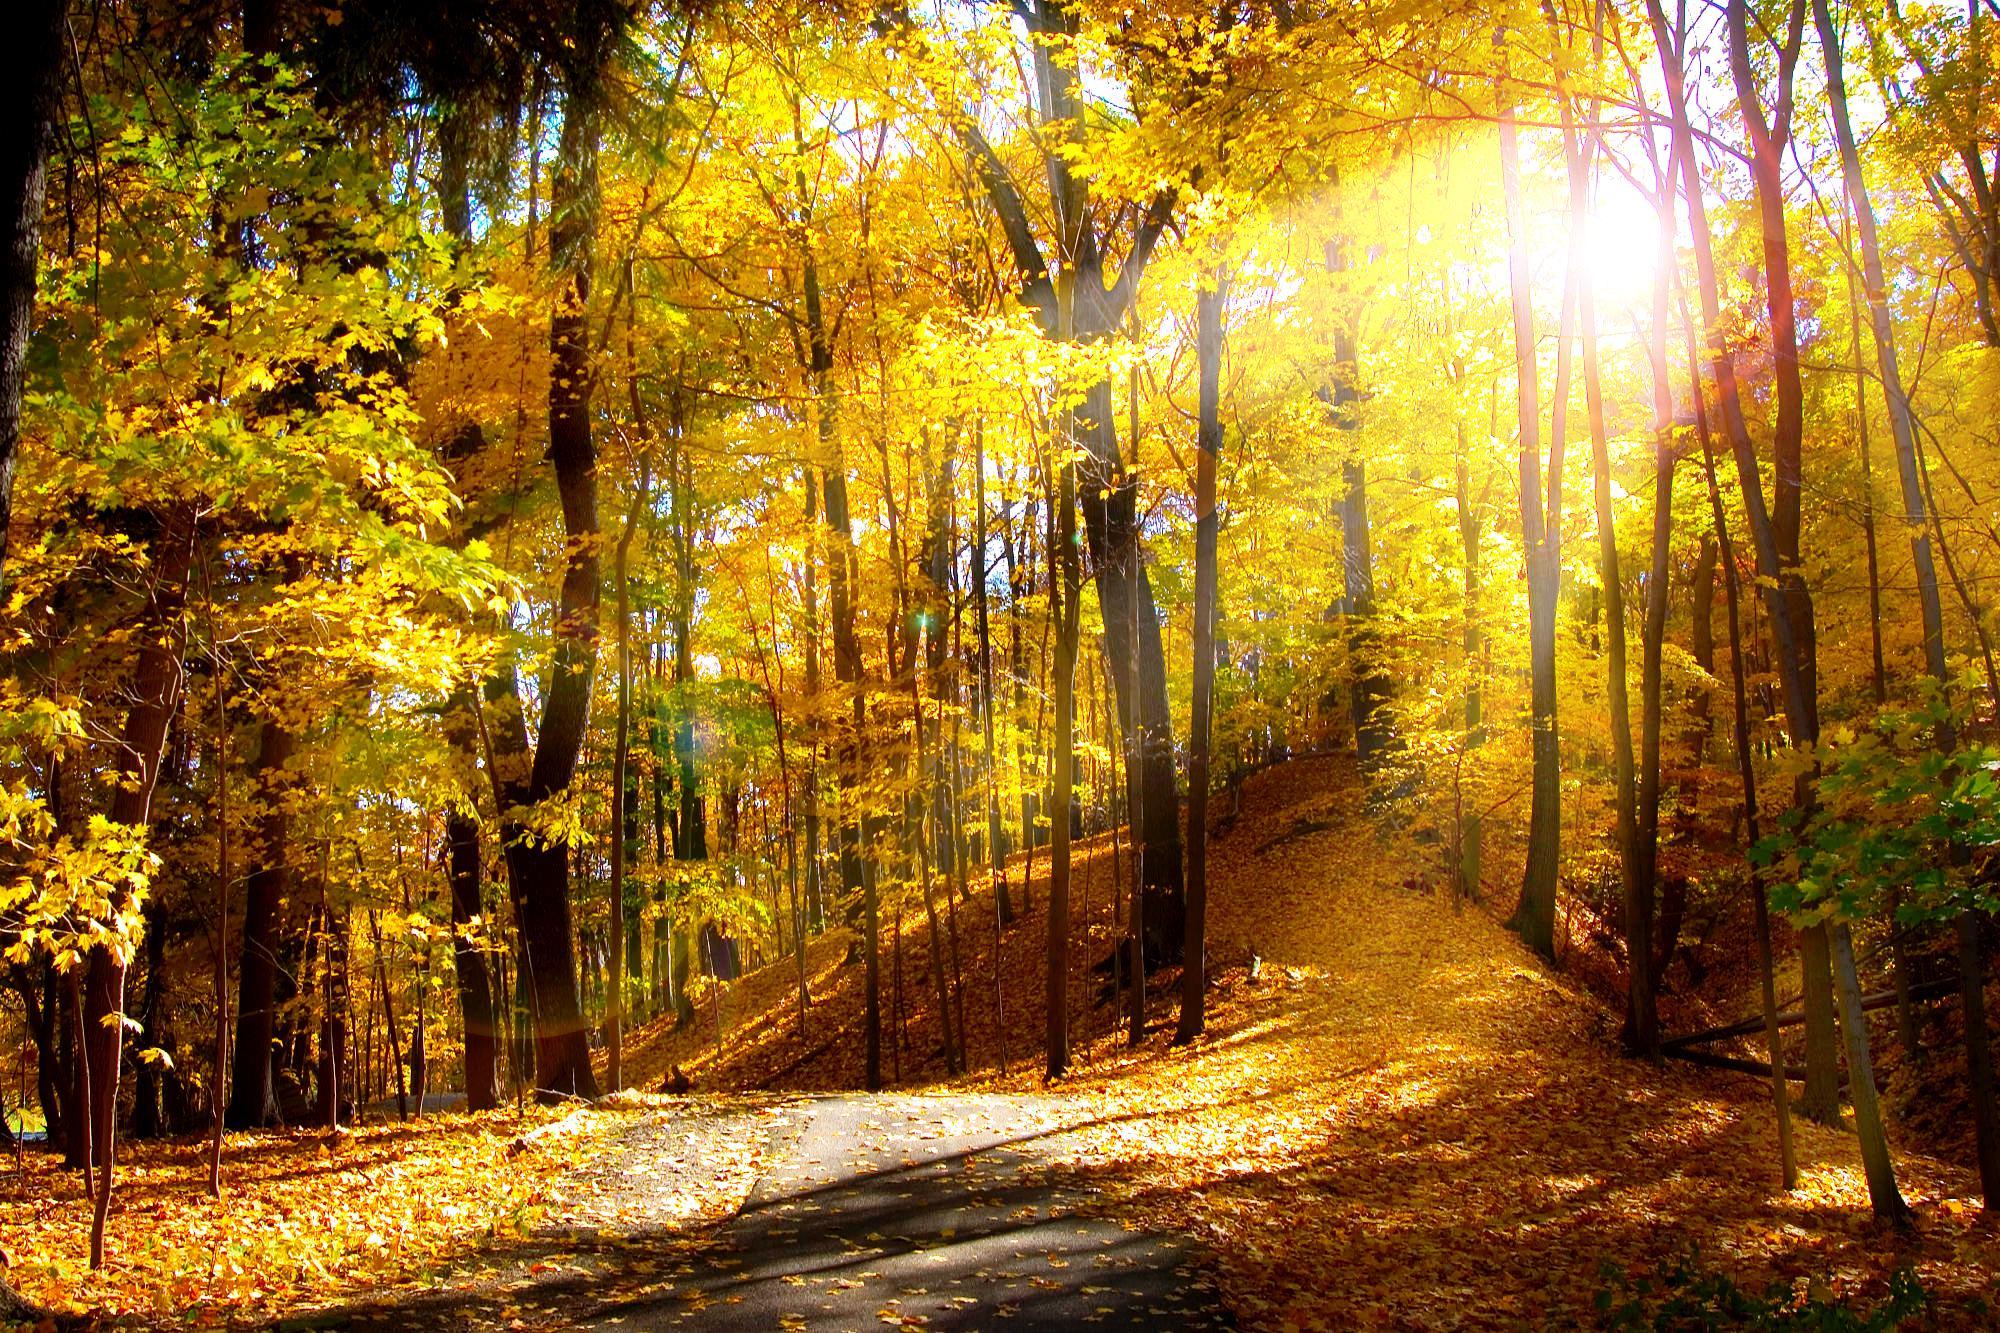 Autumn Scenes Wallpapers - Top Free Autumn Scenes Backgrounds ...